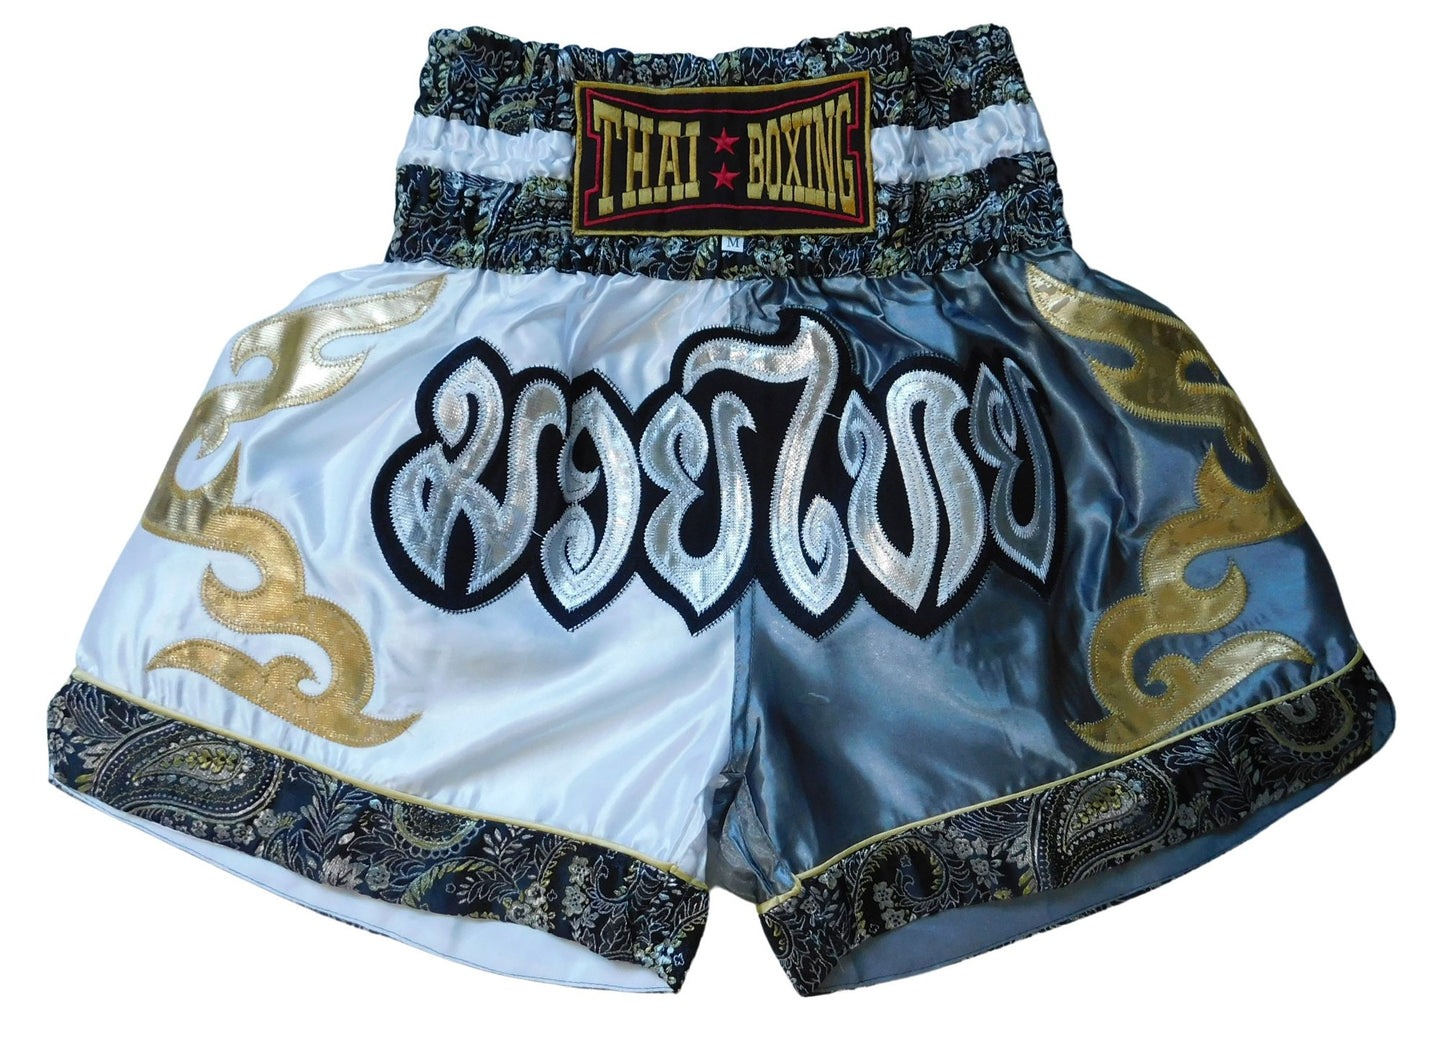 Kraftvoll und Stilvoll: Moderne Muay Thai Shorts für Erwachsene! (gestreift weiß grau unisex M-L-XL-XXL-3XL)